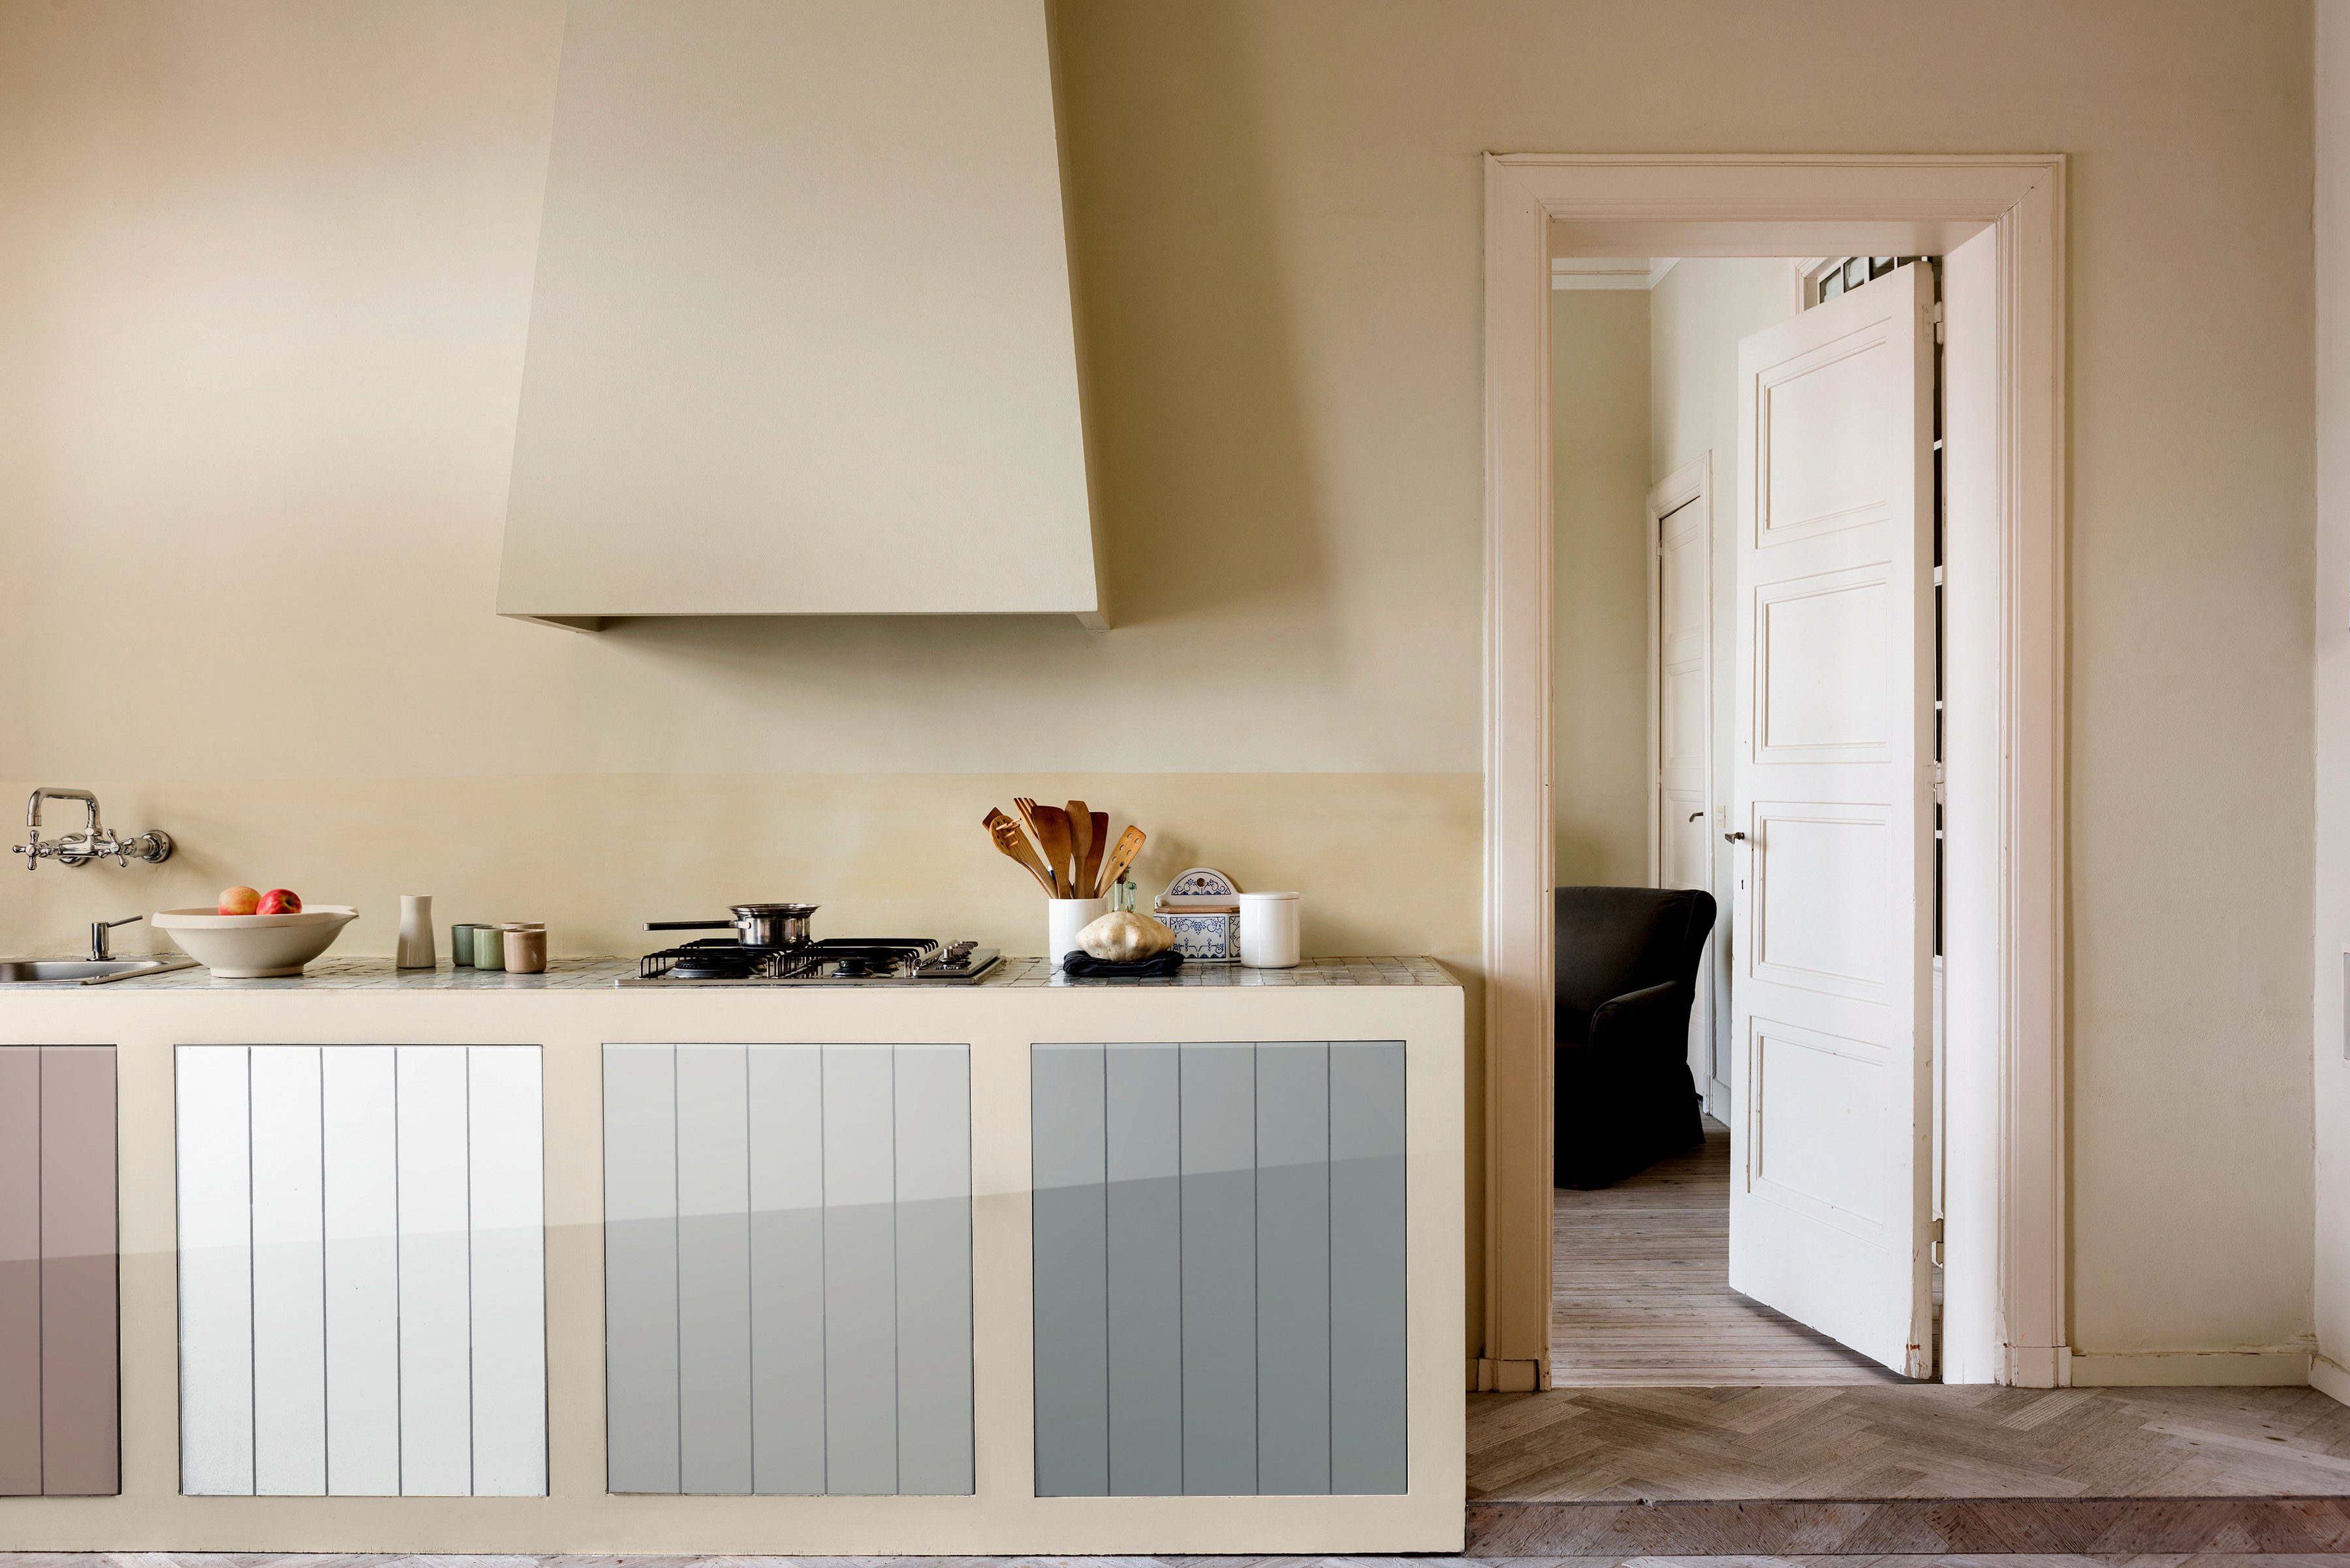 Dulux Holzlack Fresh Up, für Möbel Türen, Küchen, l 0,75 und taupe